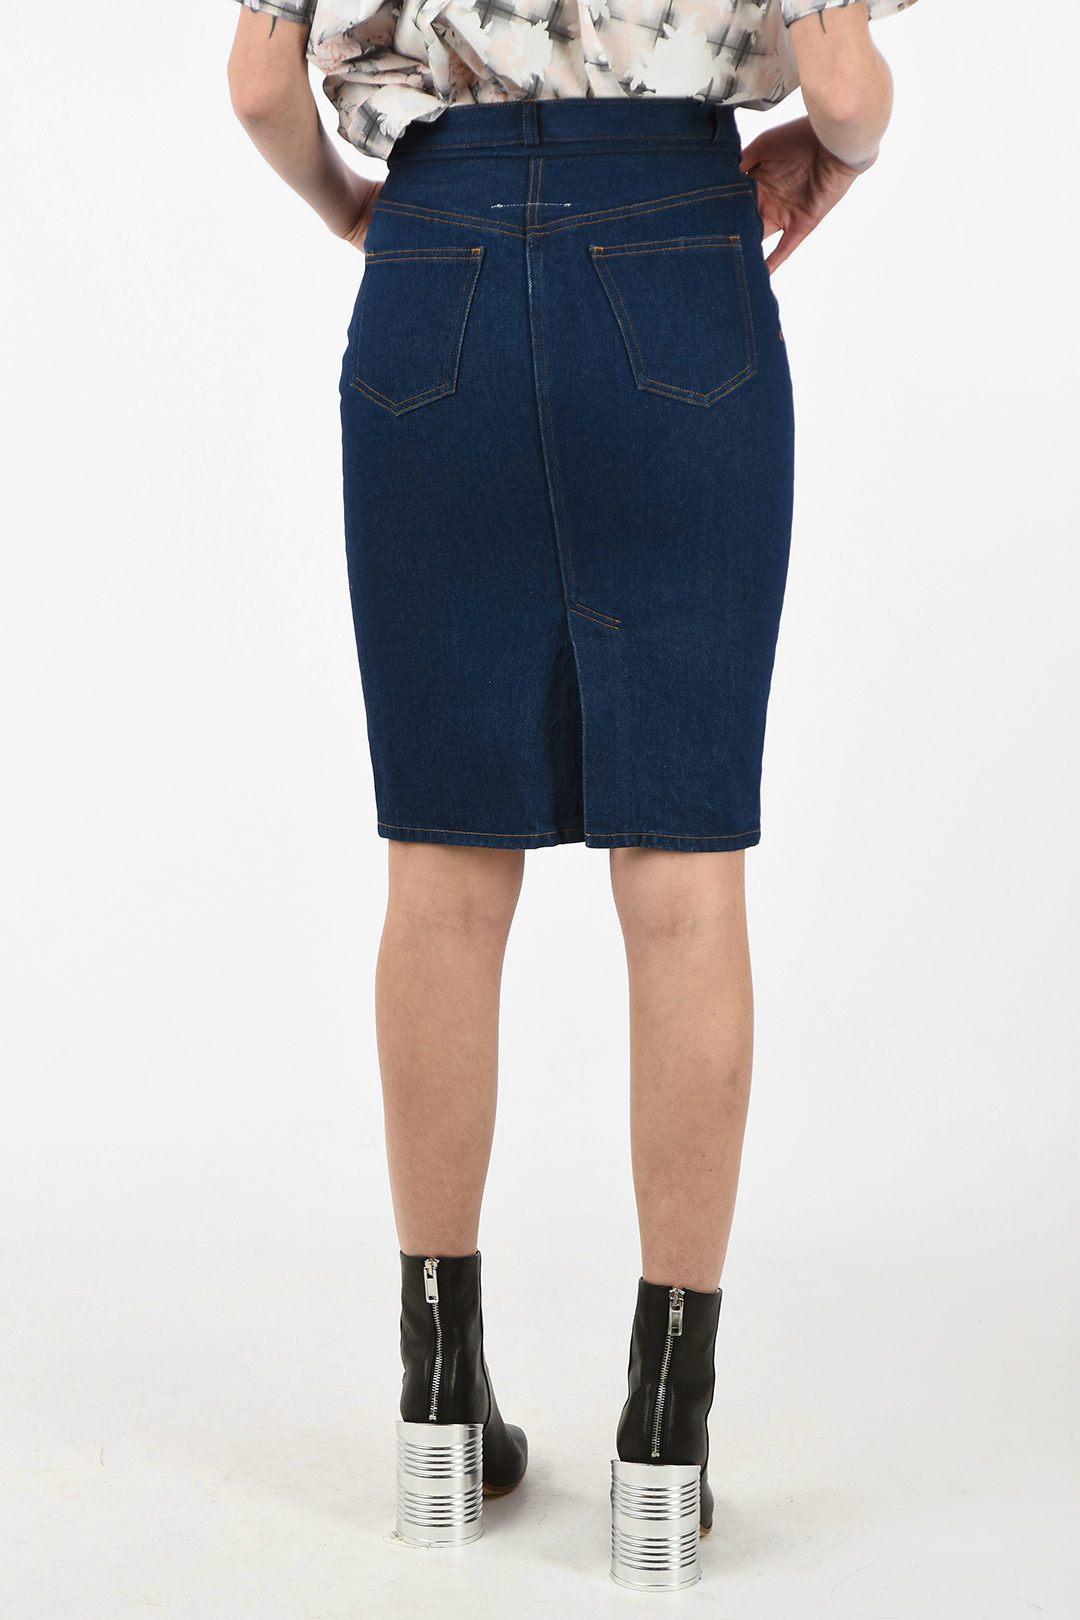 high waisted denim skirt knee length